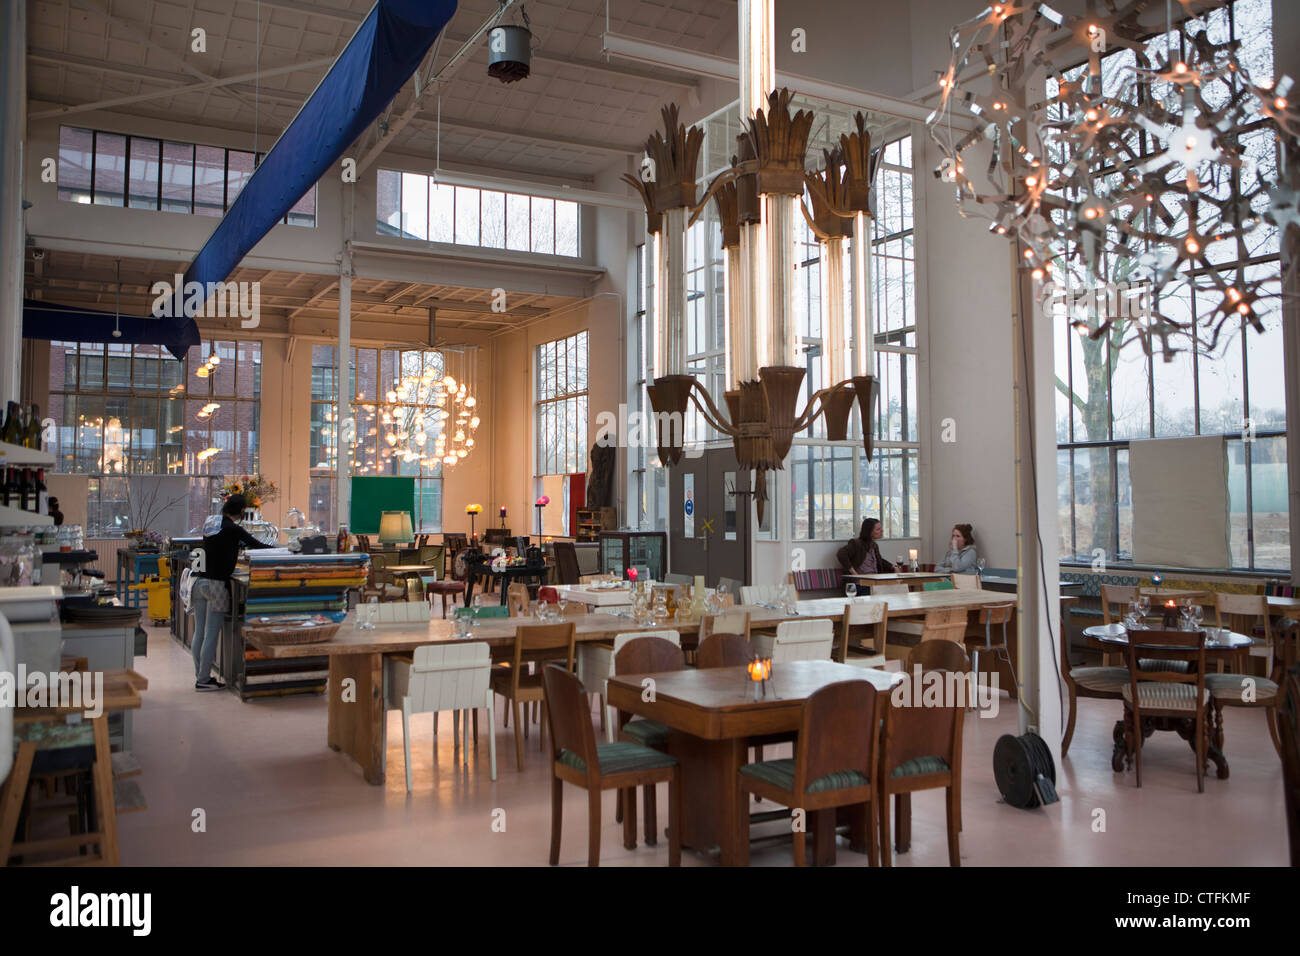 Los Países Bajos, Eindhoven, Piet Hein Eek Design Studio. Restaurante. Foto de stock